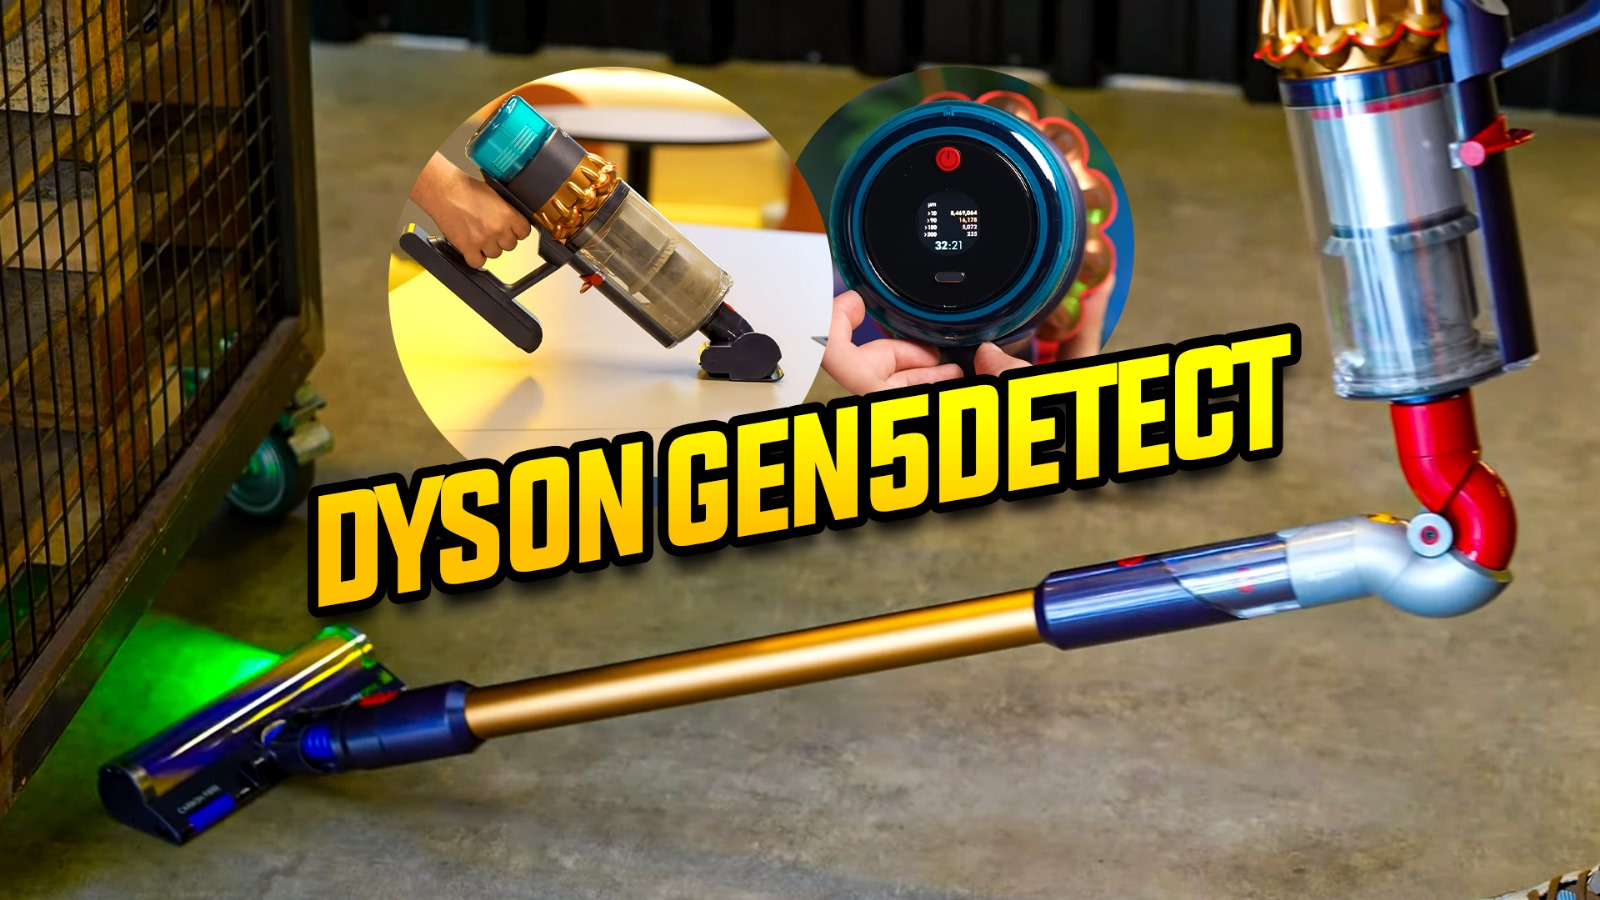 dyson-gen5detect-inceleme.jpeg